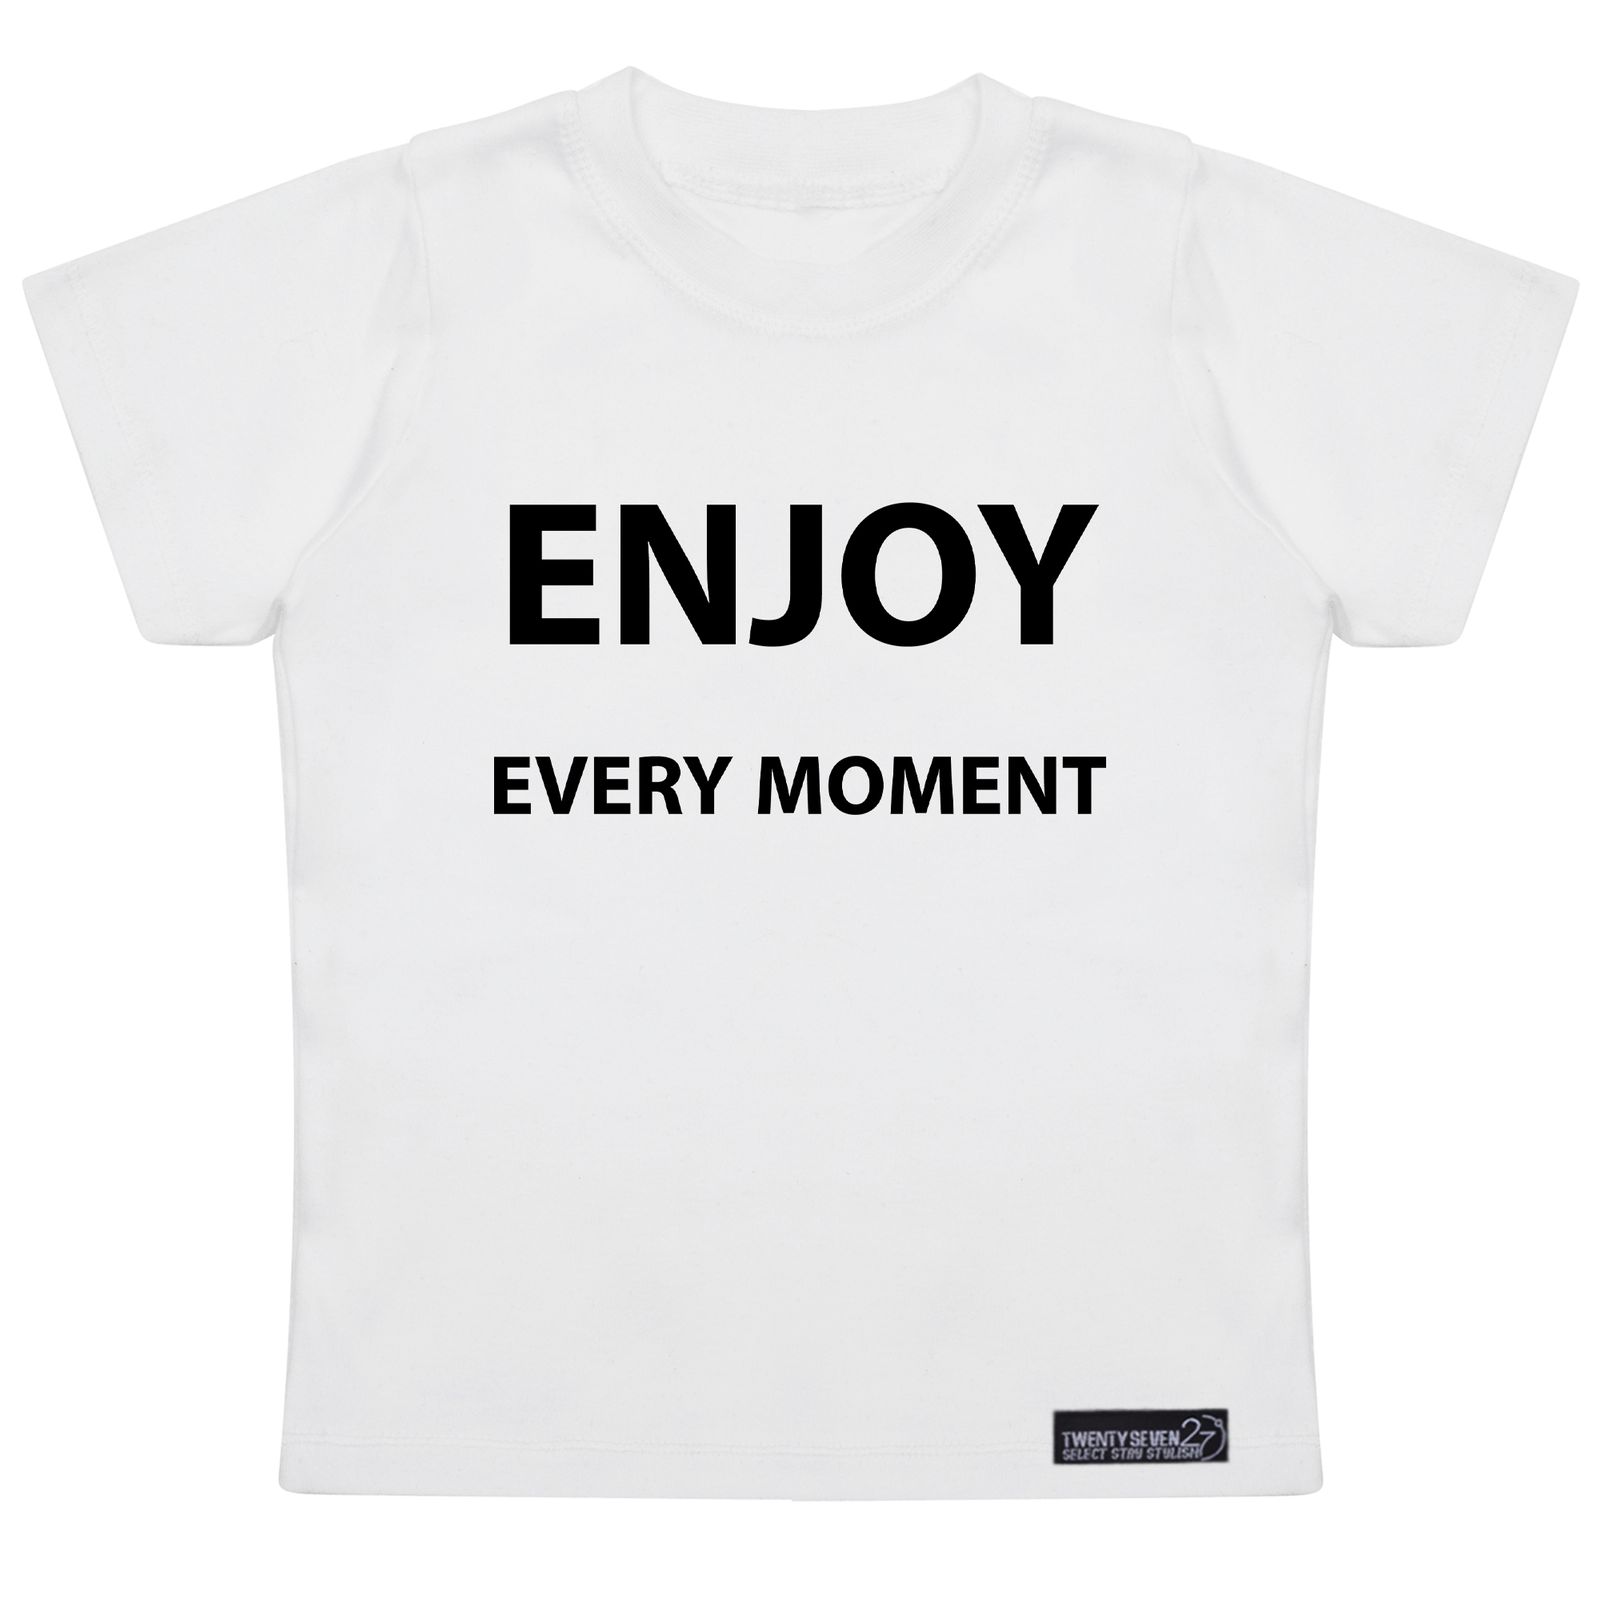 تی شرت آستین کوتاه دخترانه 27 مدل Enjoy Every Moment کد MH974 -  - 1